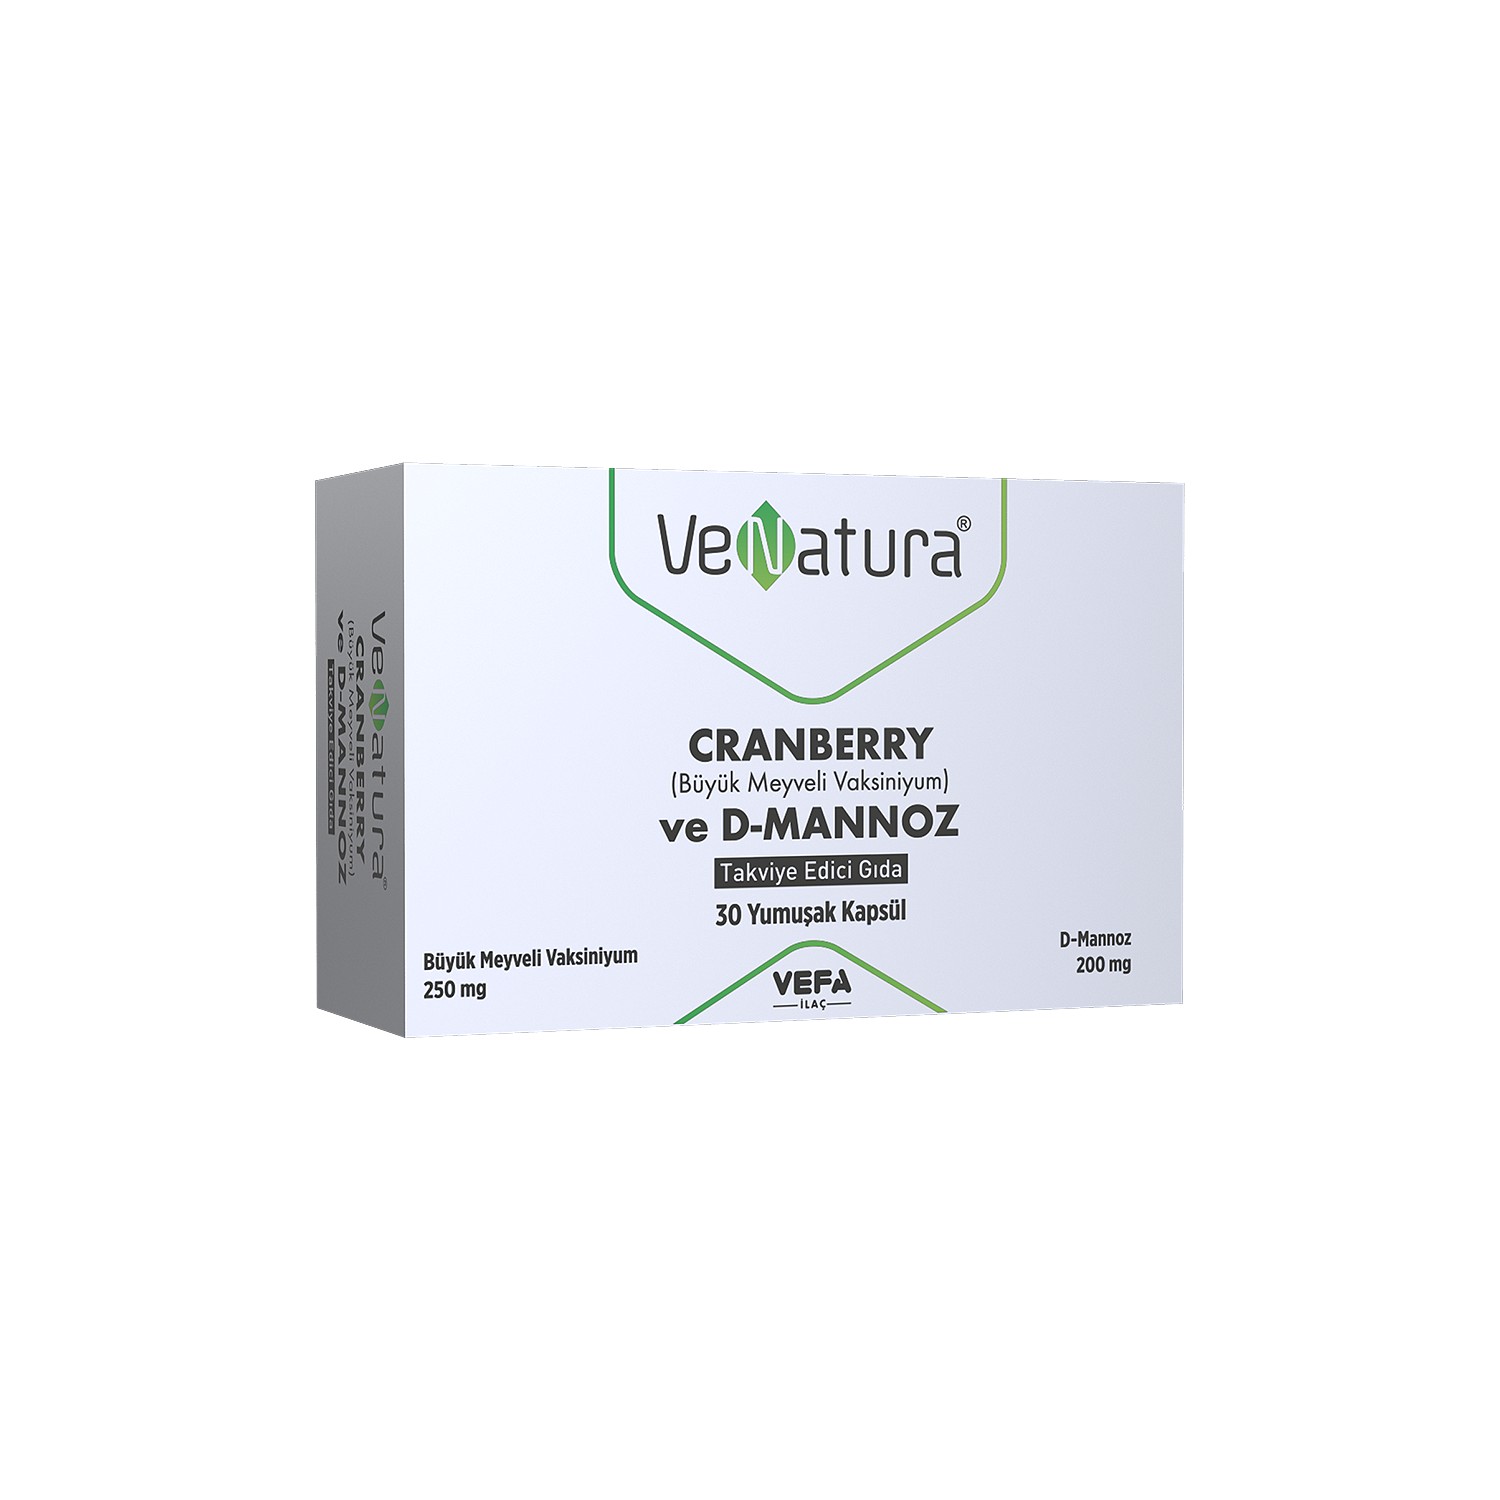 Пищевая добавка Venatura Cranberry ve D-Mannoz, 30 капсул